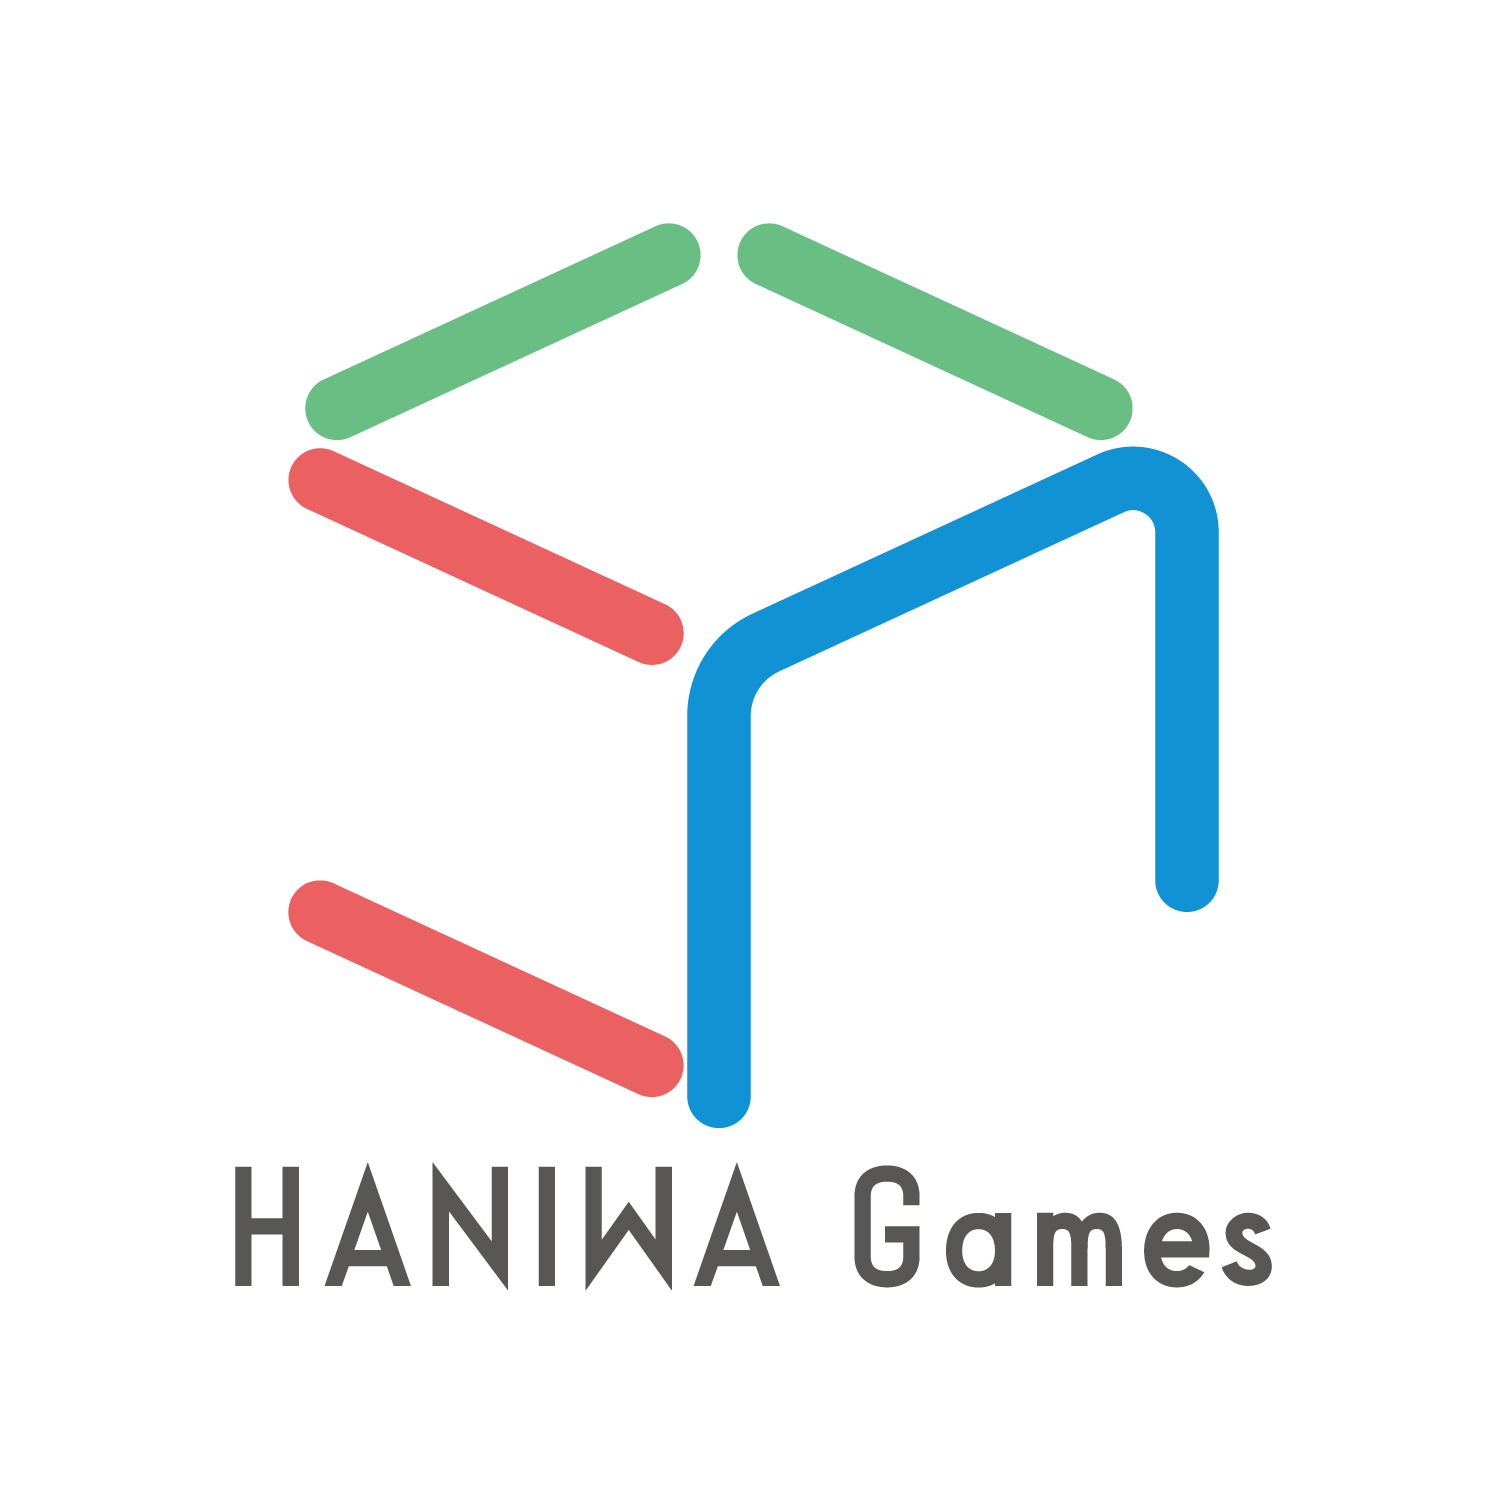 HANIWA Games